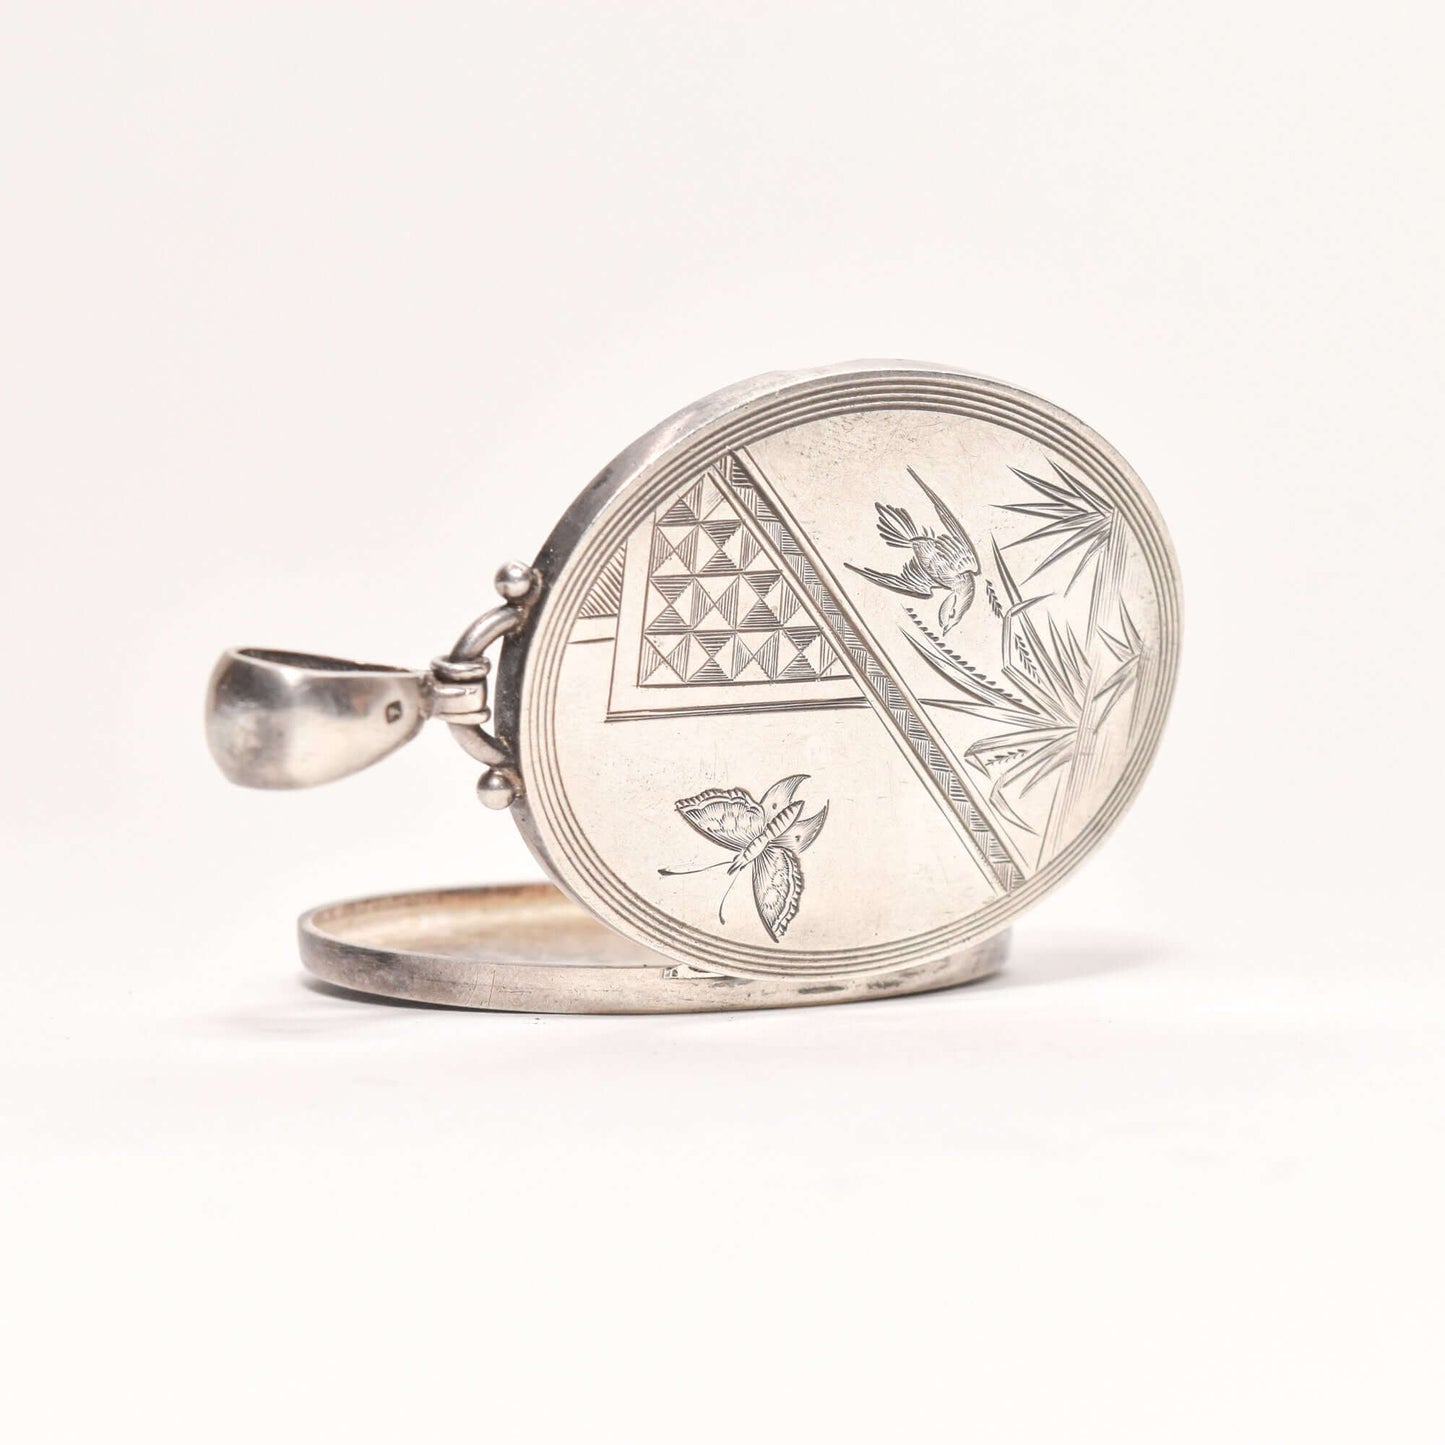 1879 Hallmarked Victorian Sterling Silver Engraved Locket, Butterfly & Bird Scene, Valentines Day Gift